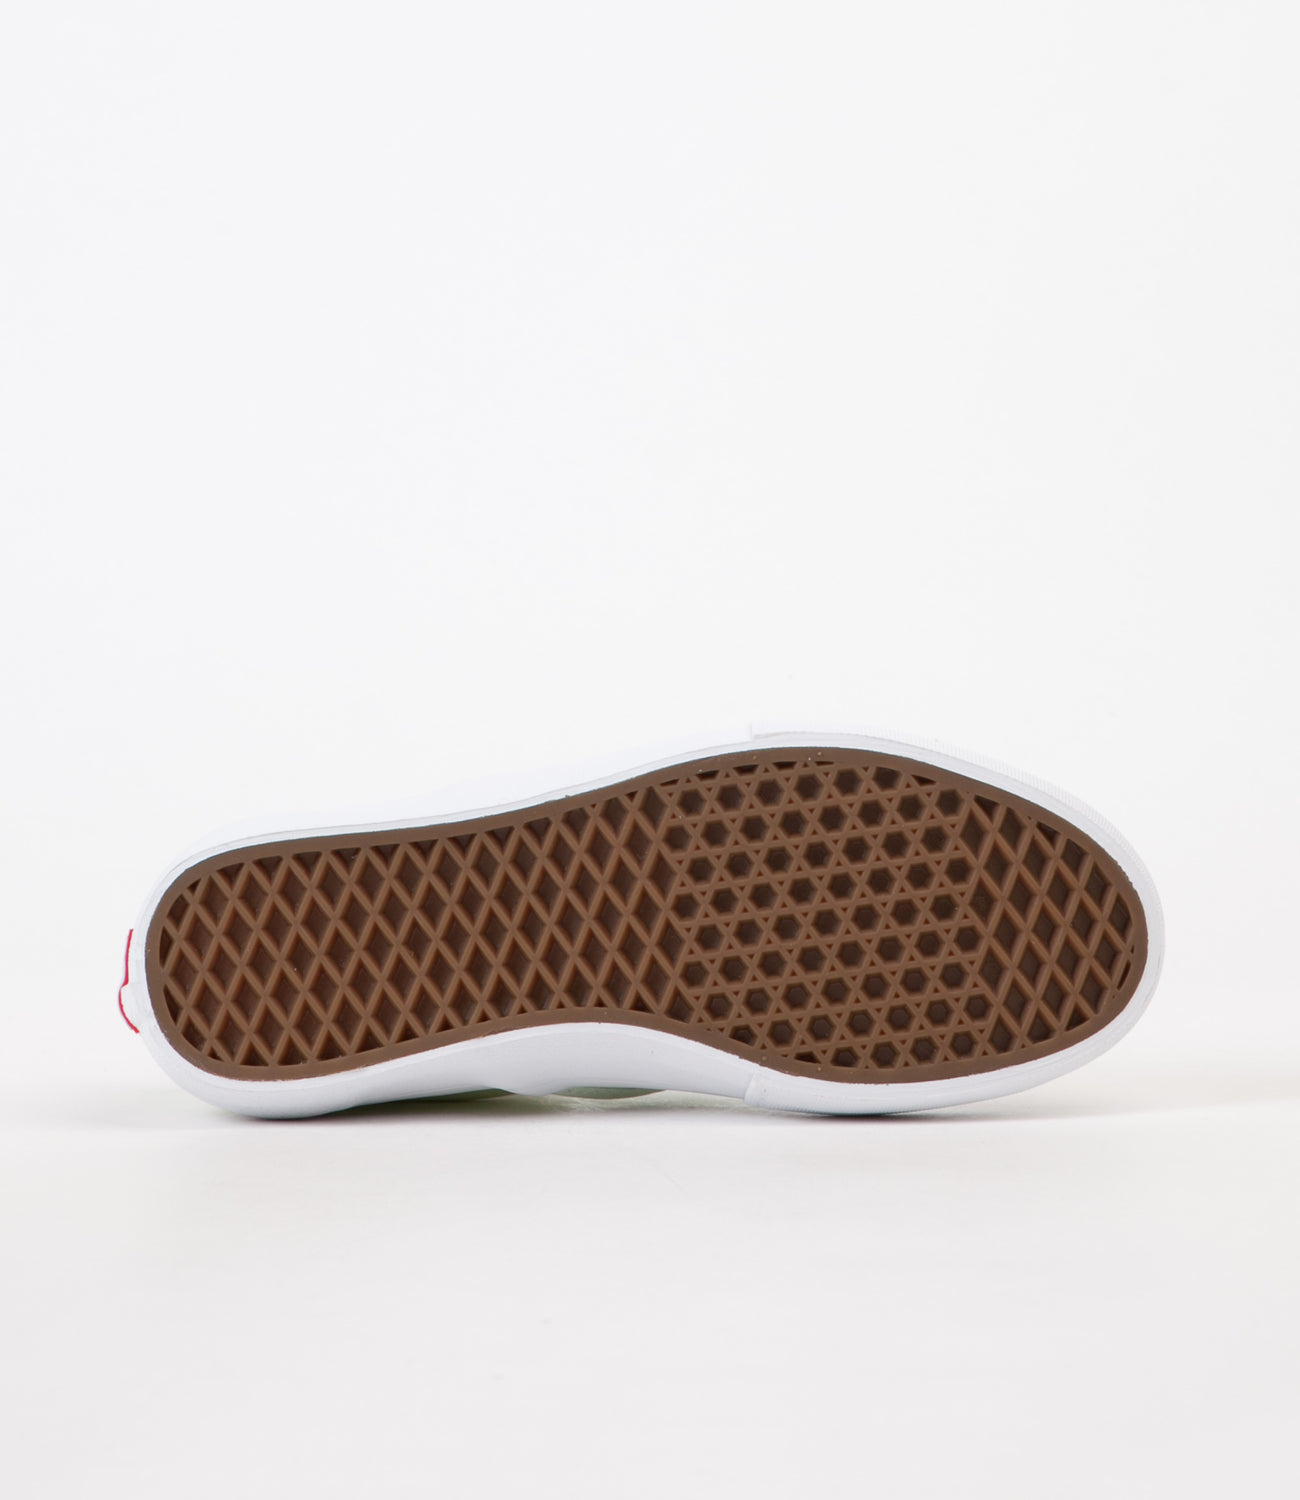 Vans Slip On Pro Shoes - Ambrosia / White | Flatspot